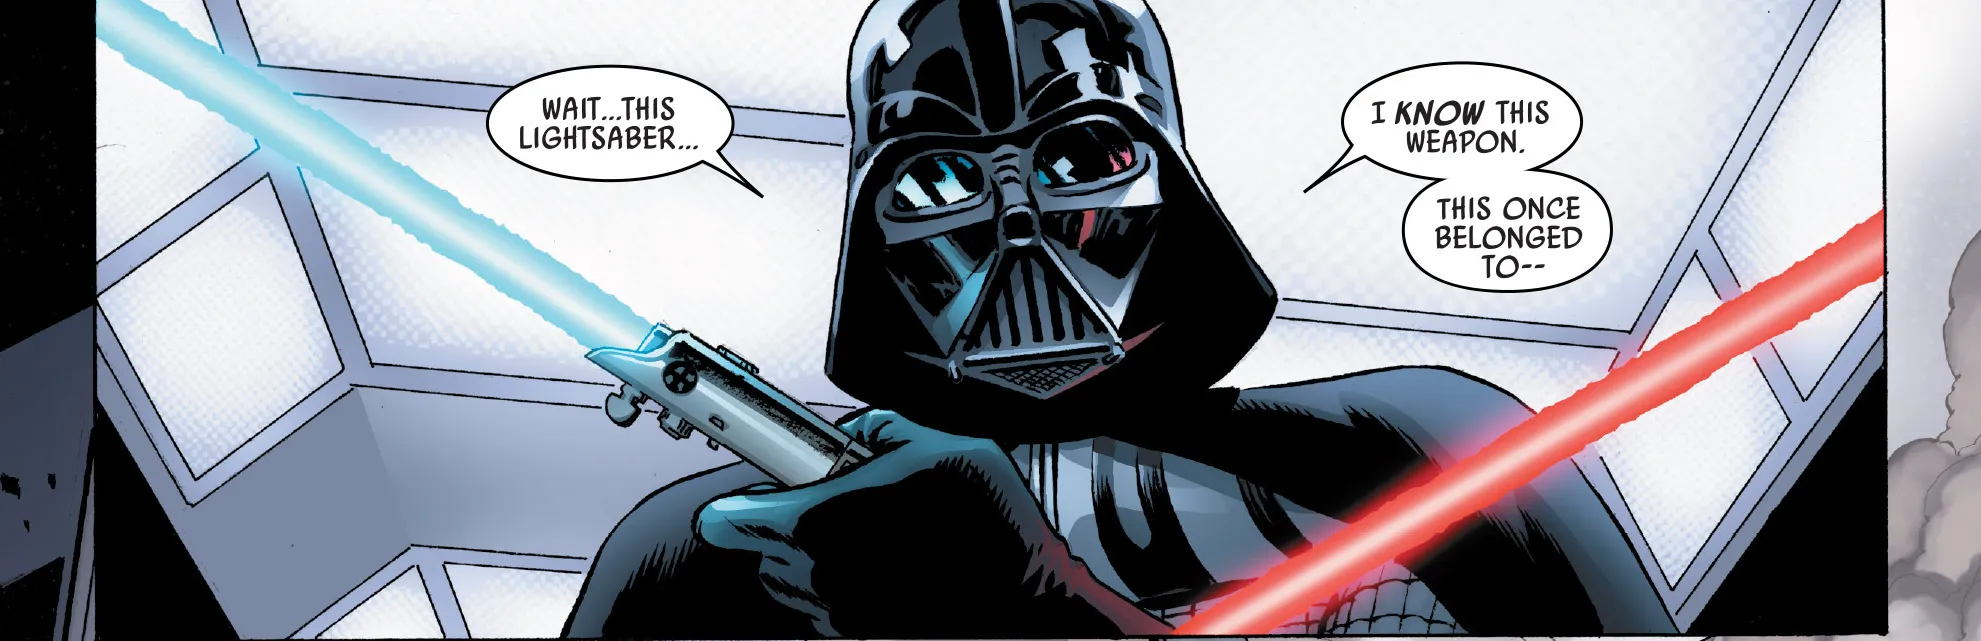 Durante a luta, Vader toma o sabre de Luke e o reconhece como sendo a sua antiga arma (imagem: Reprodução/Marvel Comics)